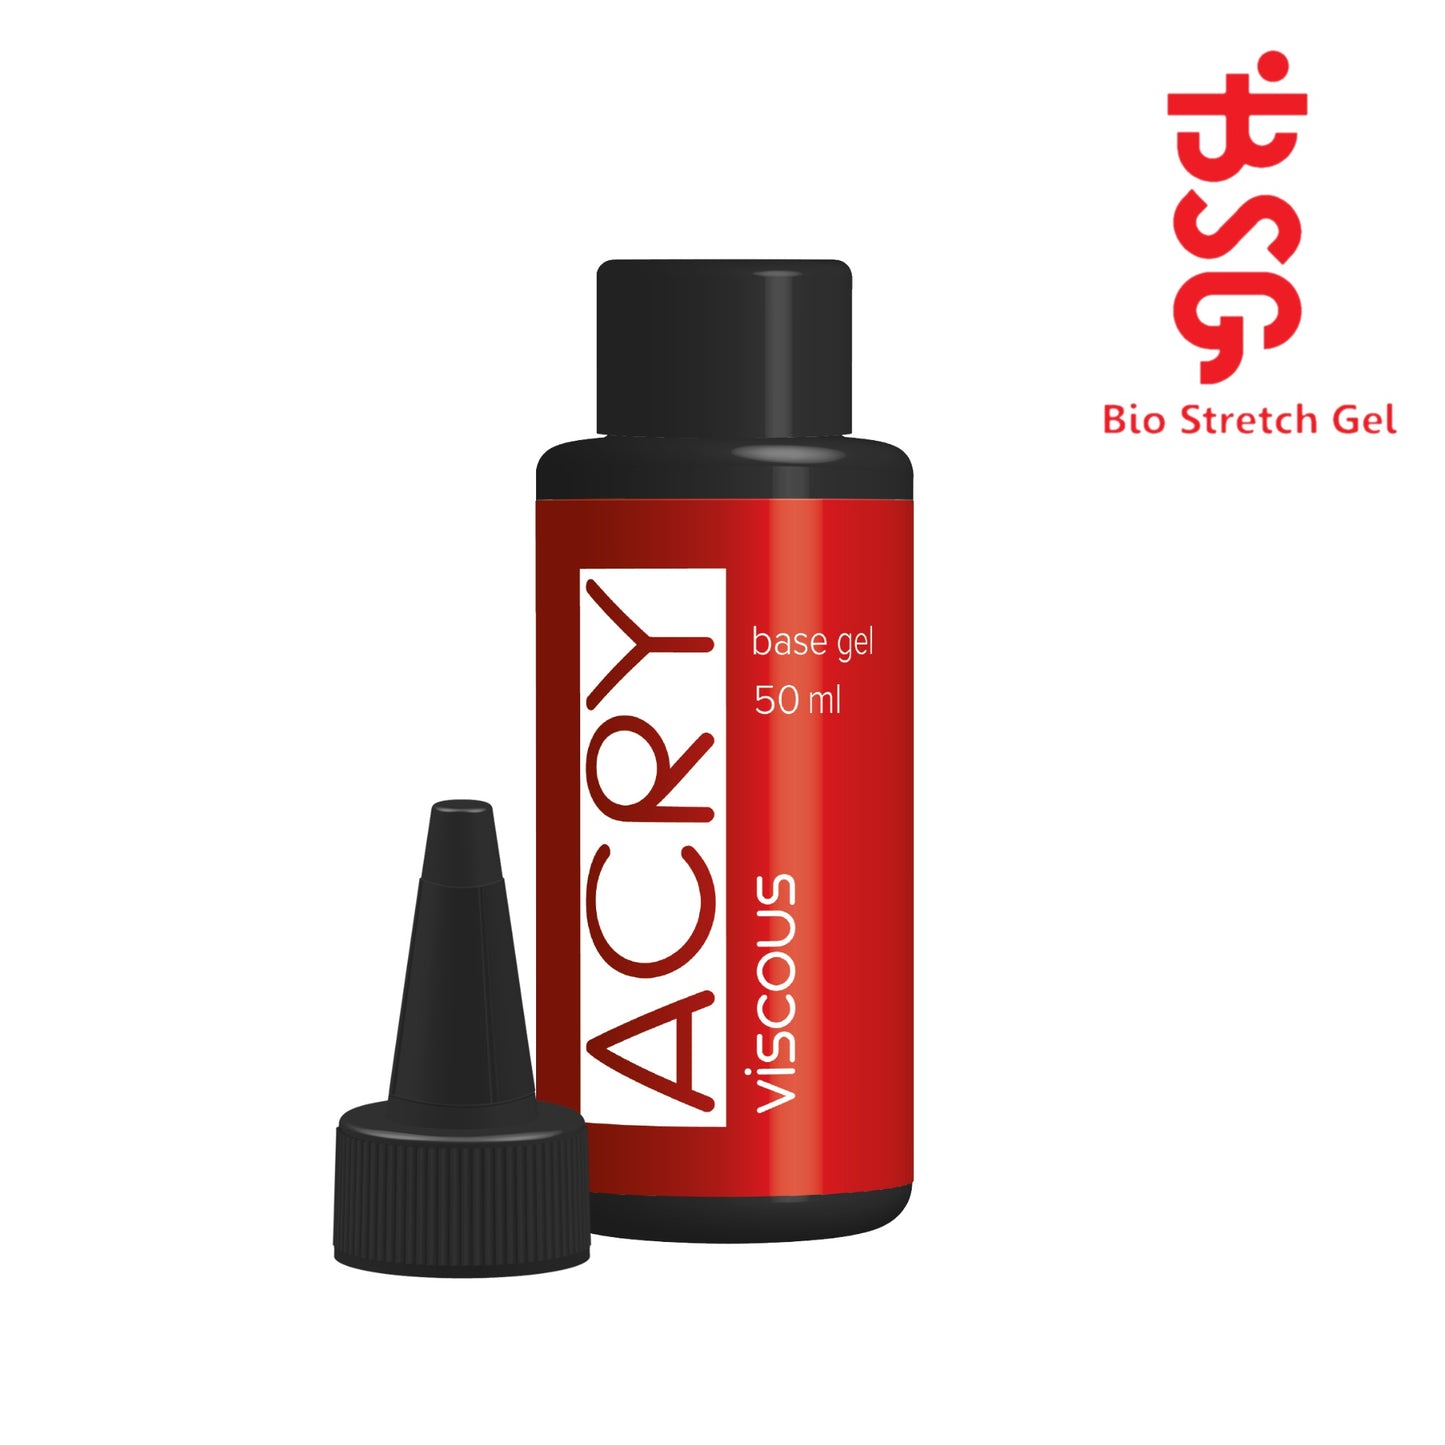 BSG ACRY - Base clear gel with acrylic powder (20 ml/50ml/100ml)